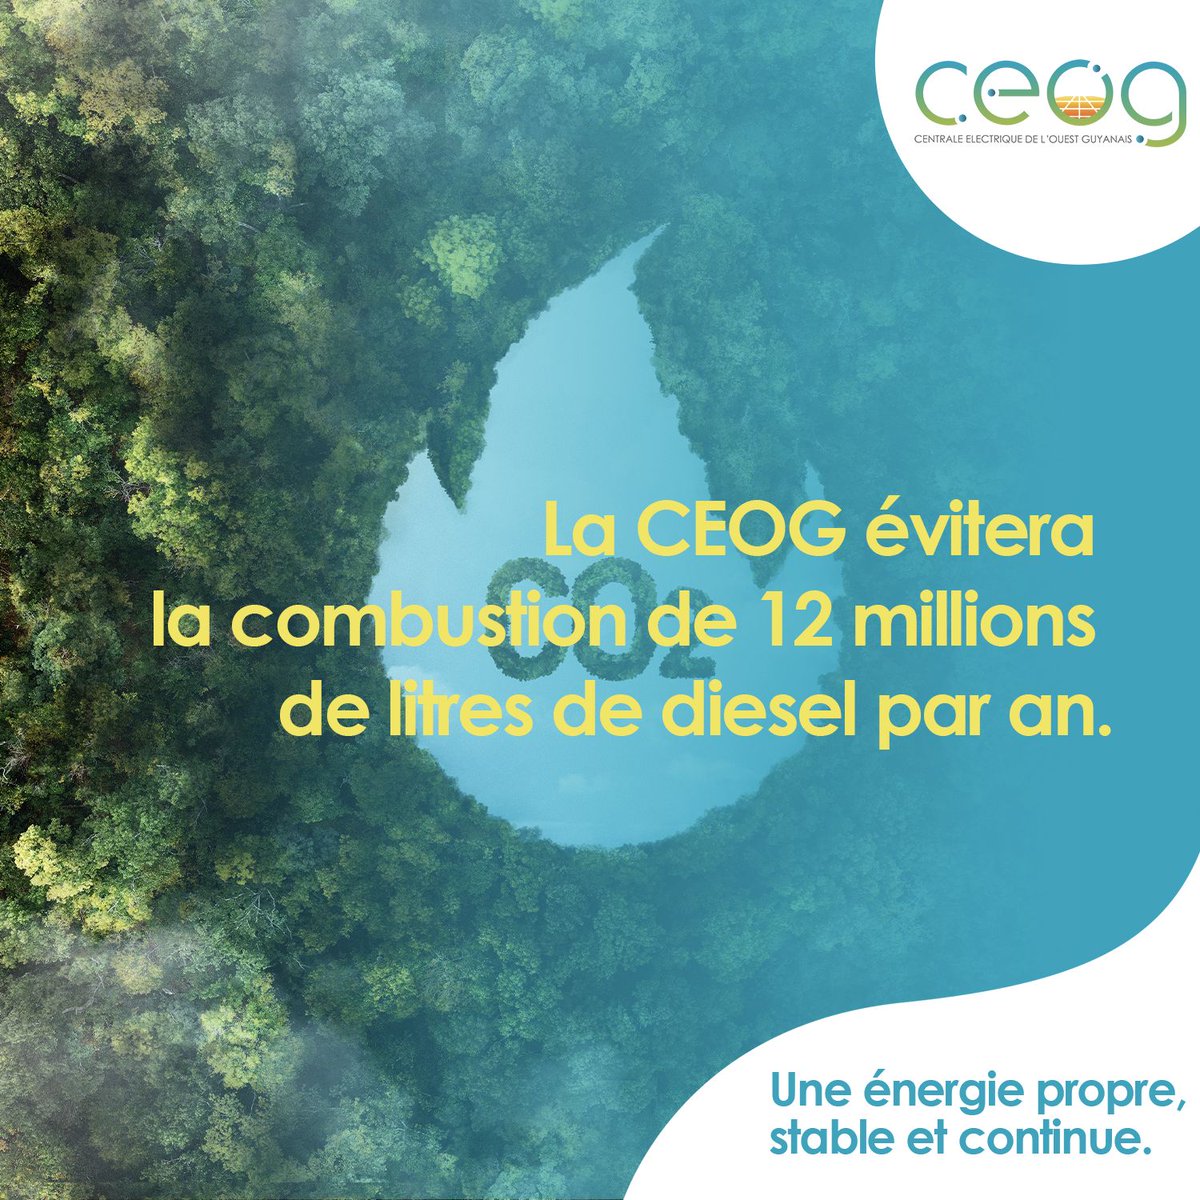 L'utilisation de la technologie de la CEOG permettra d'éviter la combustion de 12 millions de litres de diesel par an. 🌿💡 Un pas significatif vers une approche plus durable et respectueuse de l'environnement.